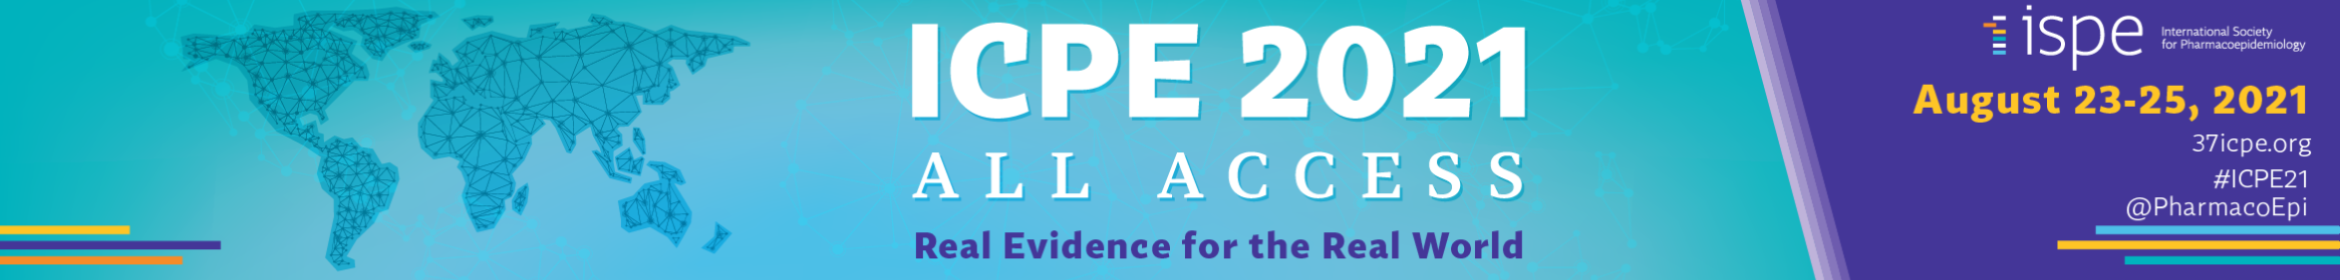 ICPE 2021 Main banner